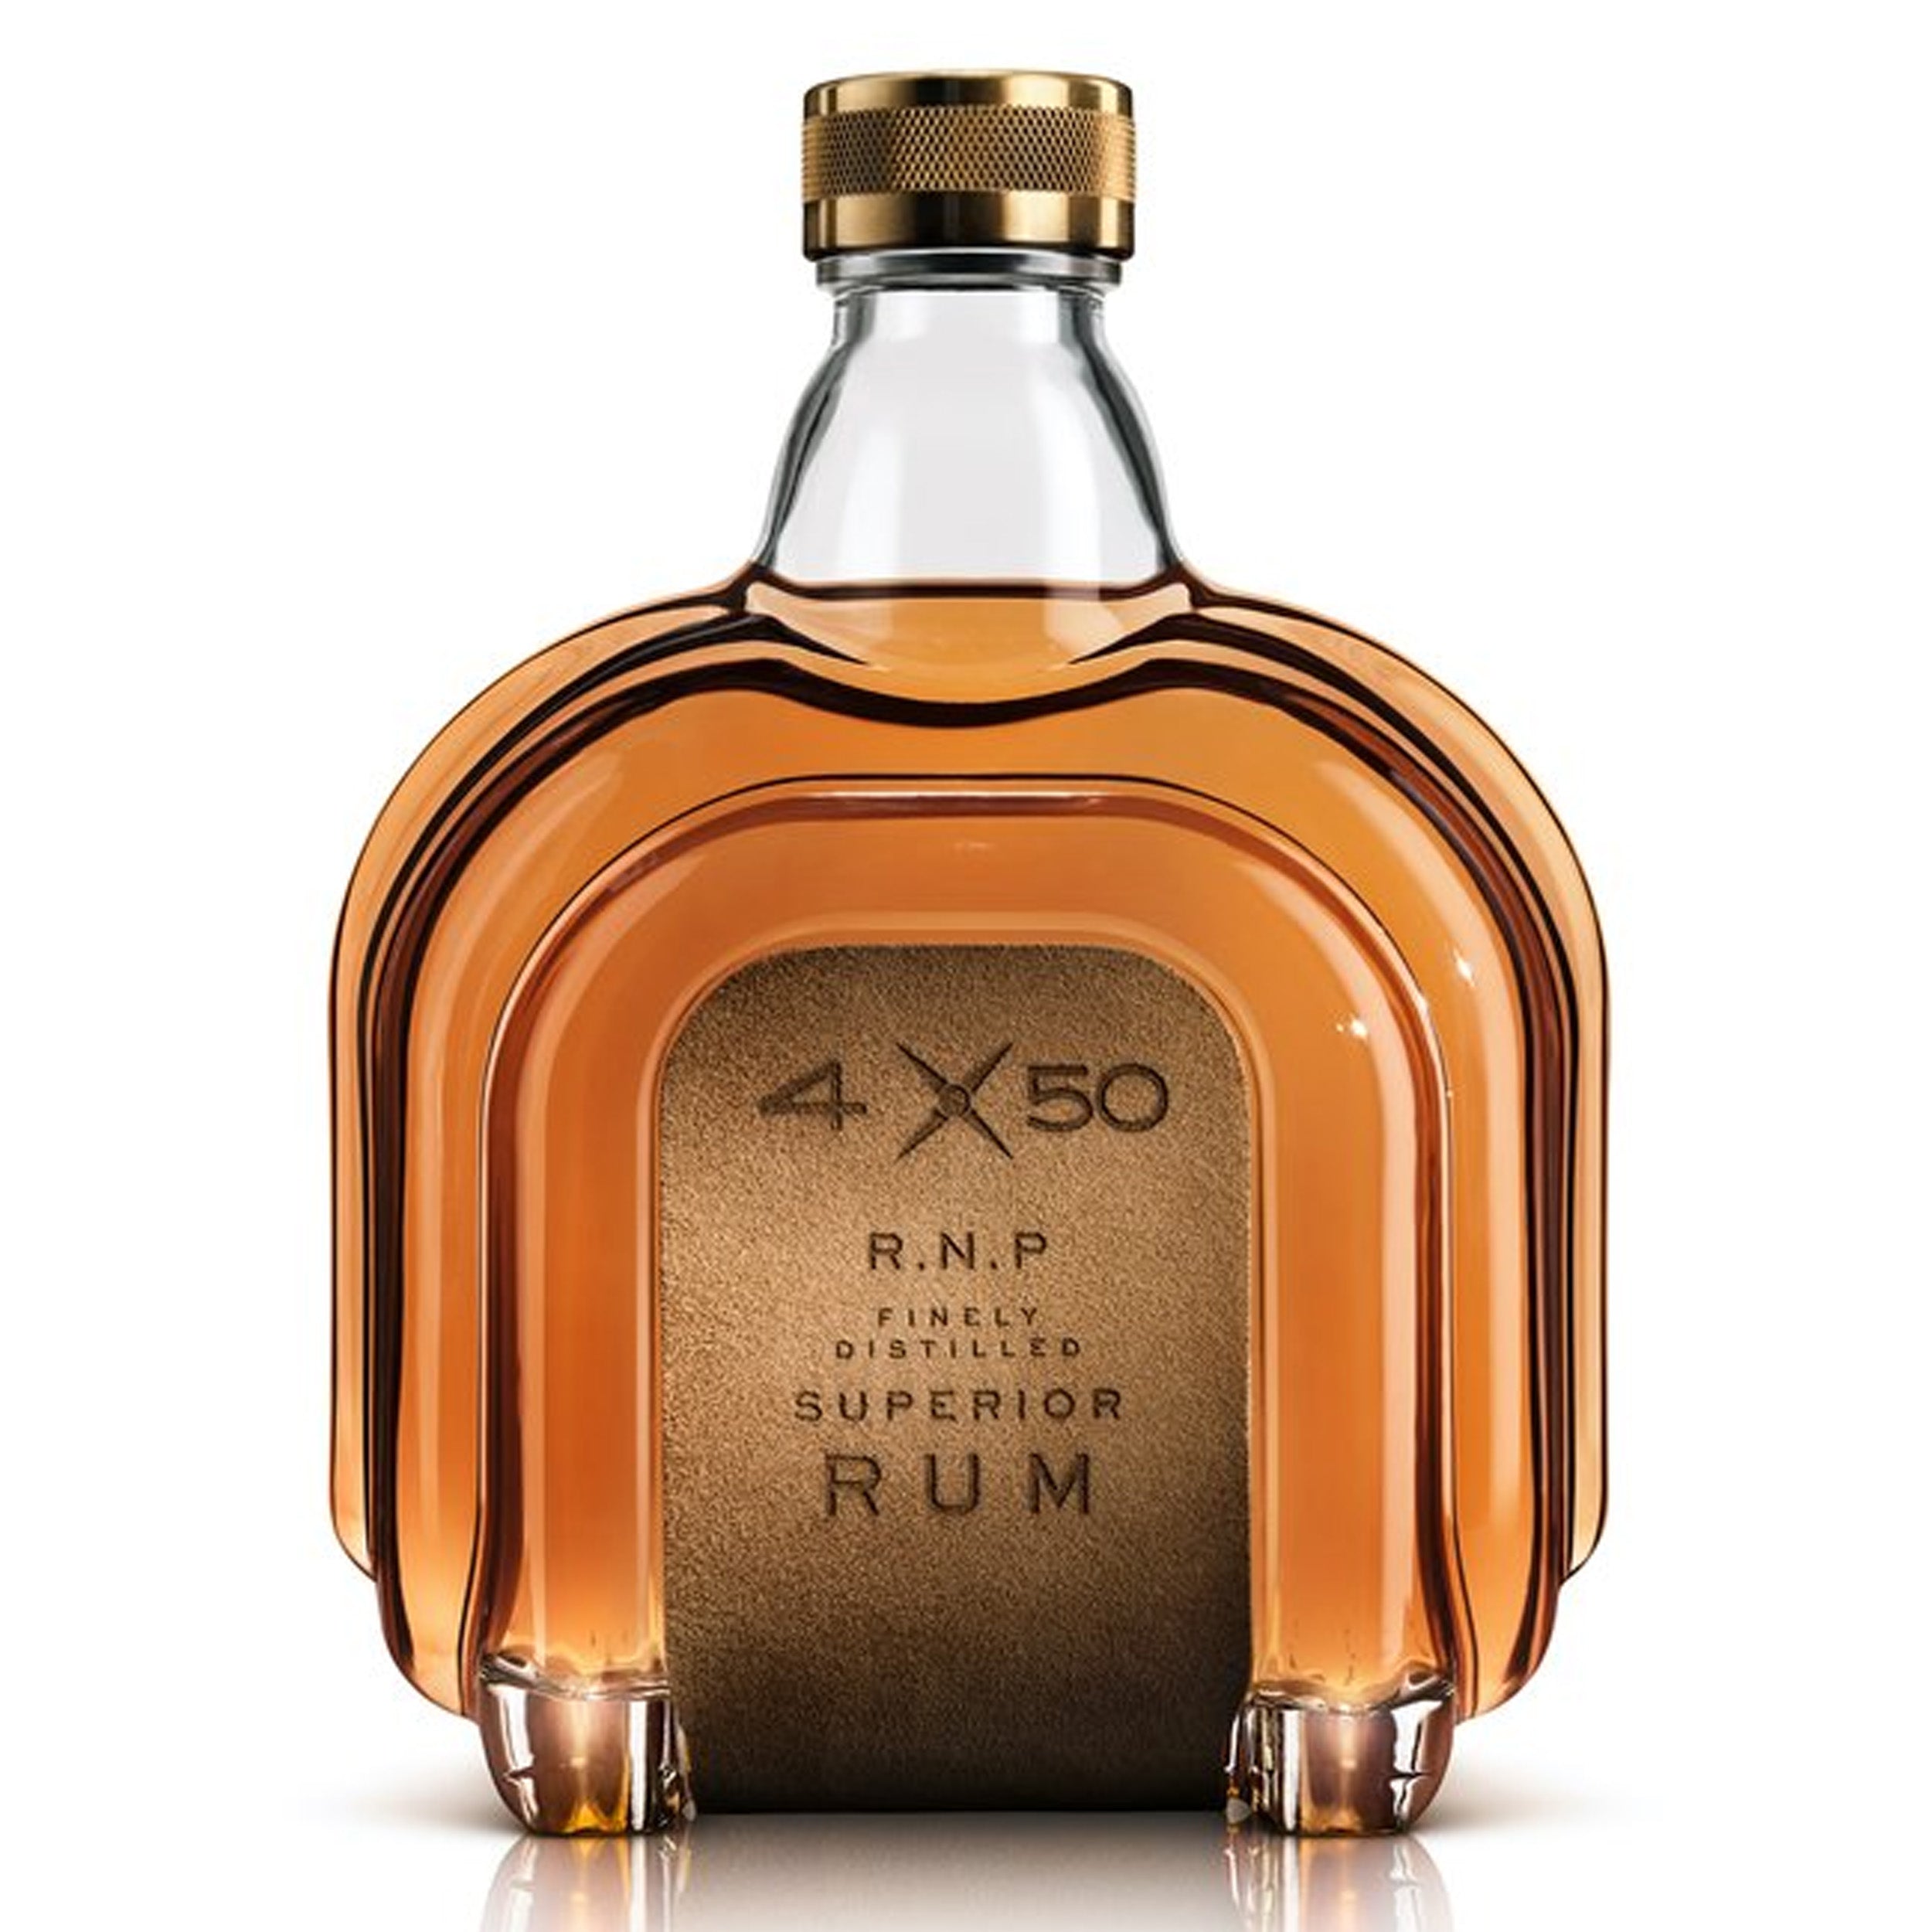 4 x 50 Rum R.N.P. Superior Rum